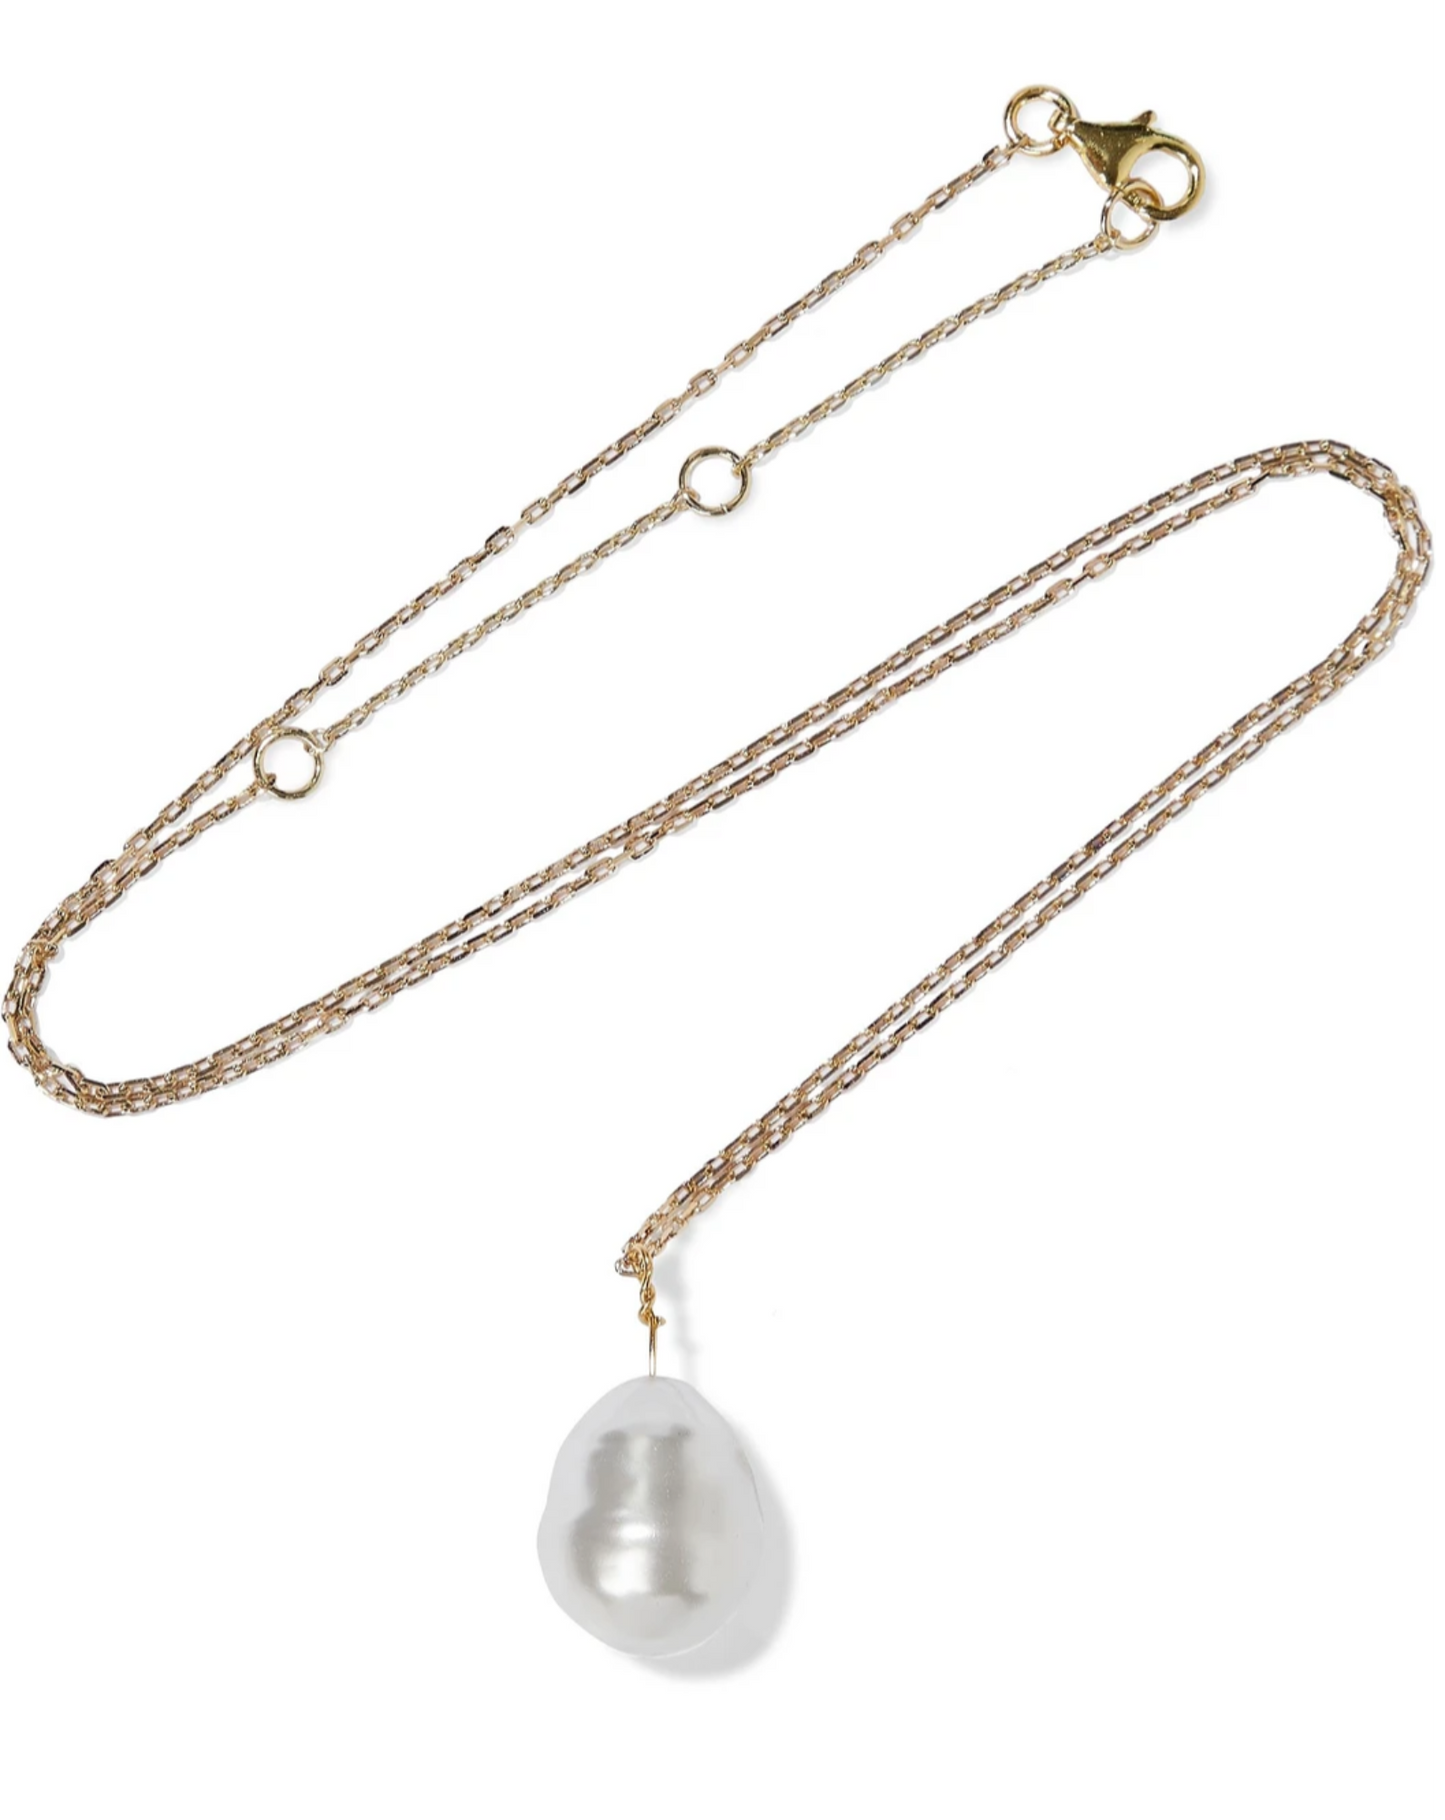 Swarovski Pearl Gold Necklace